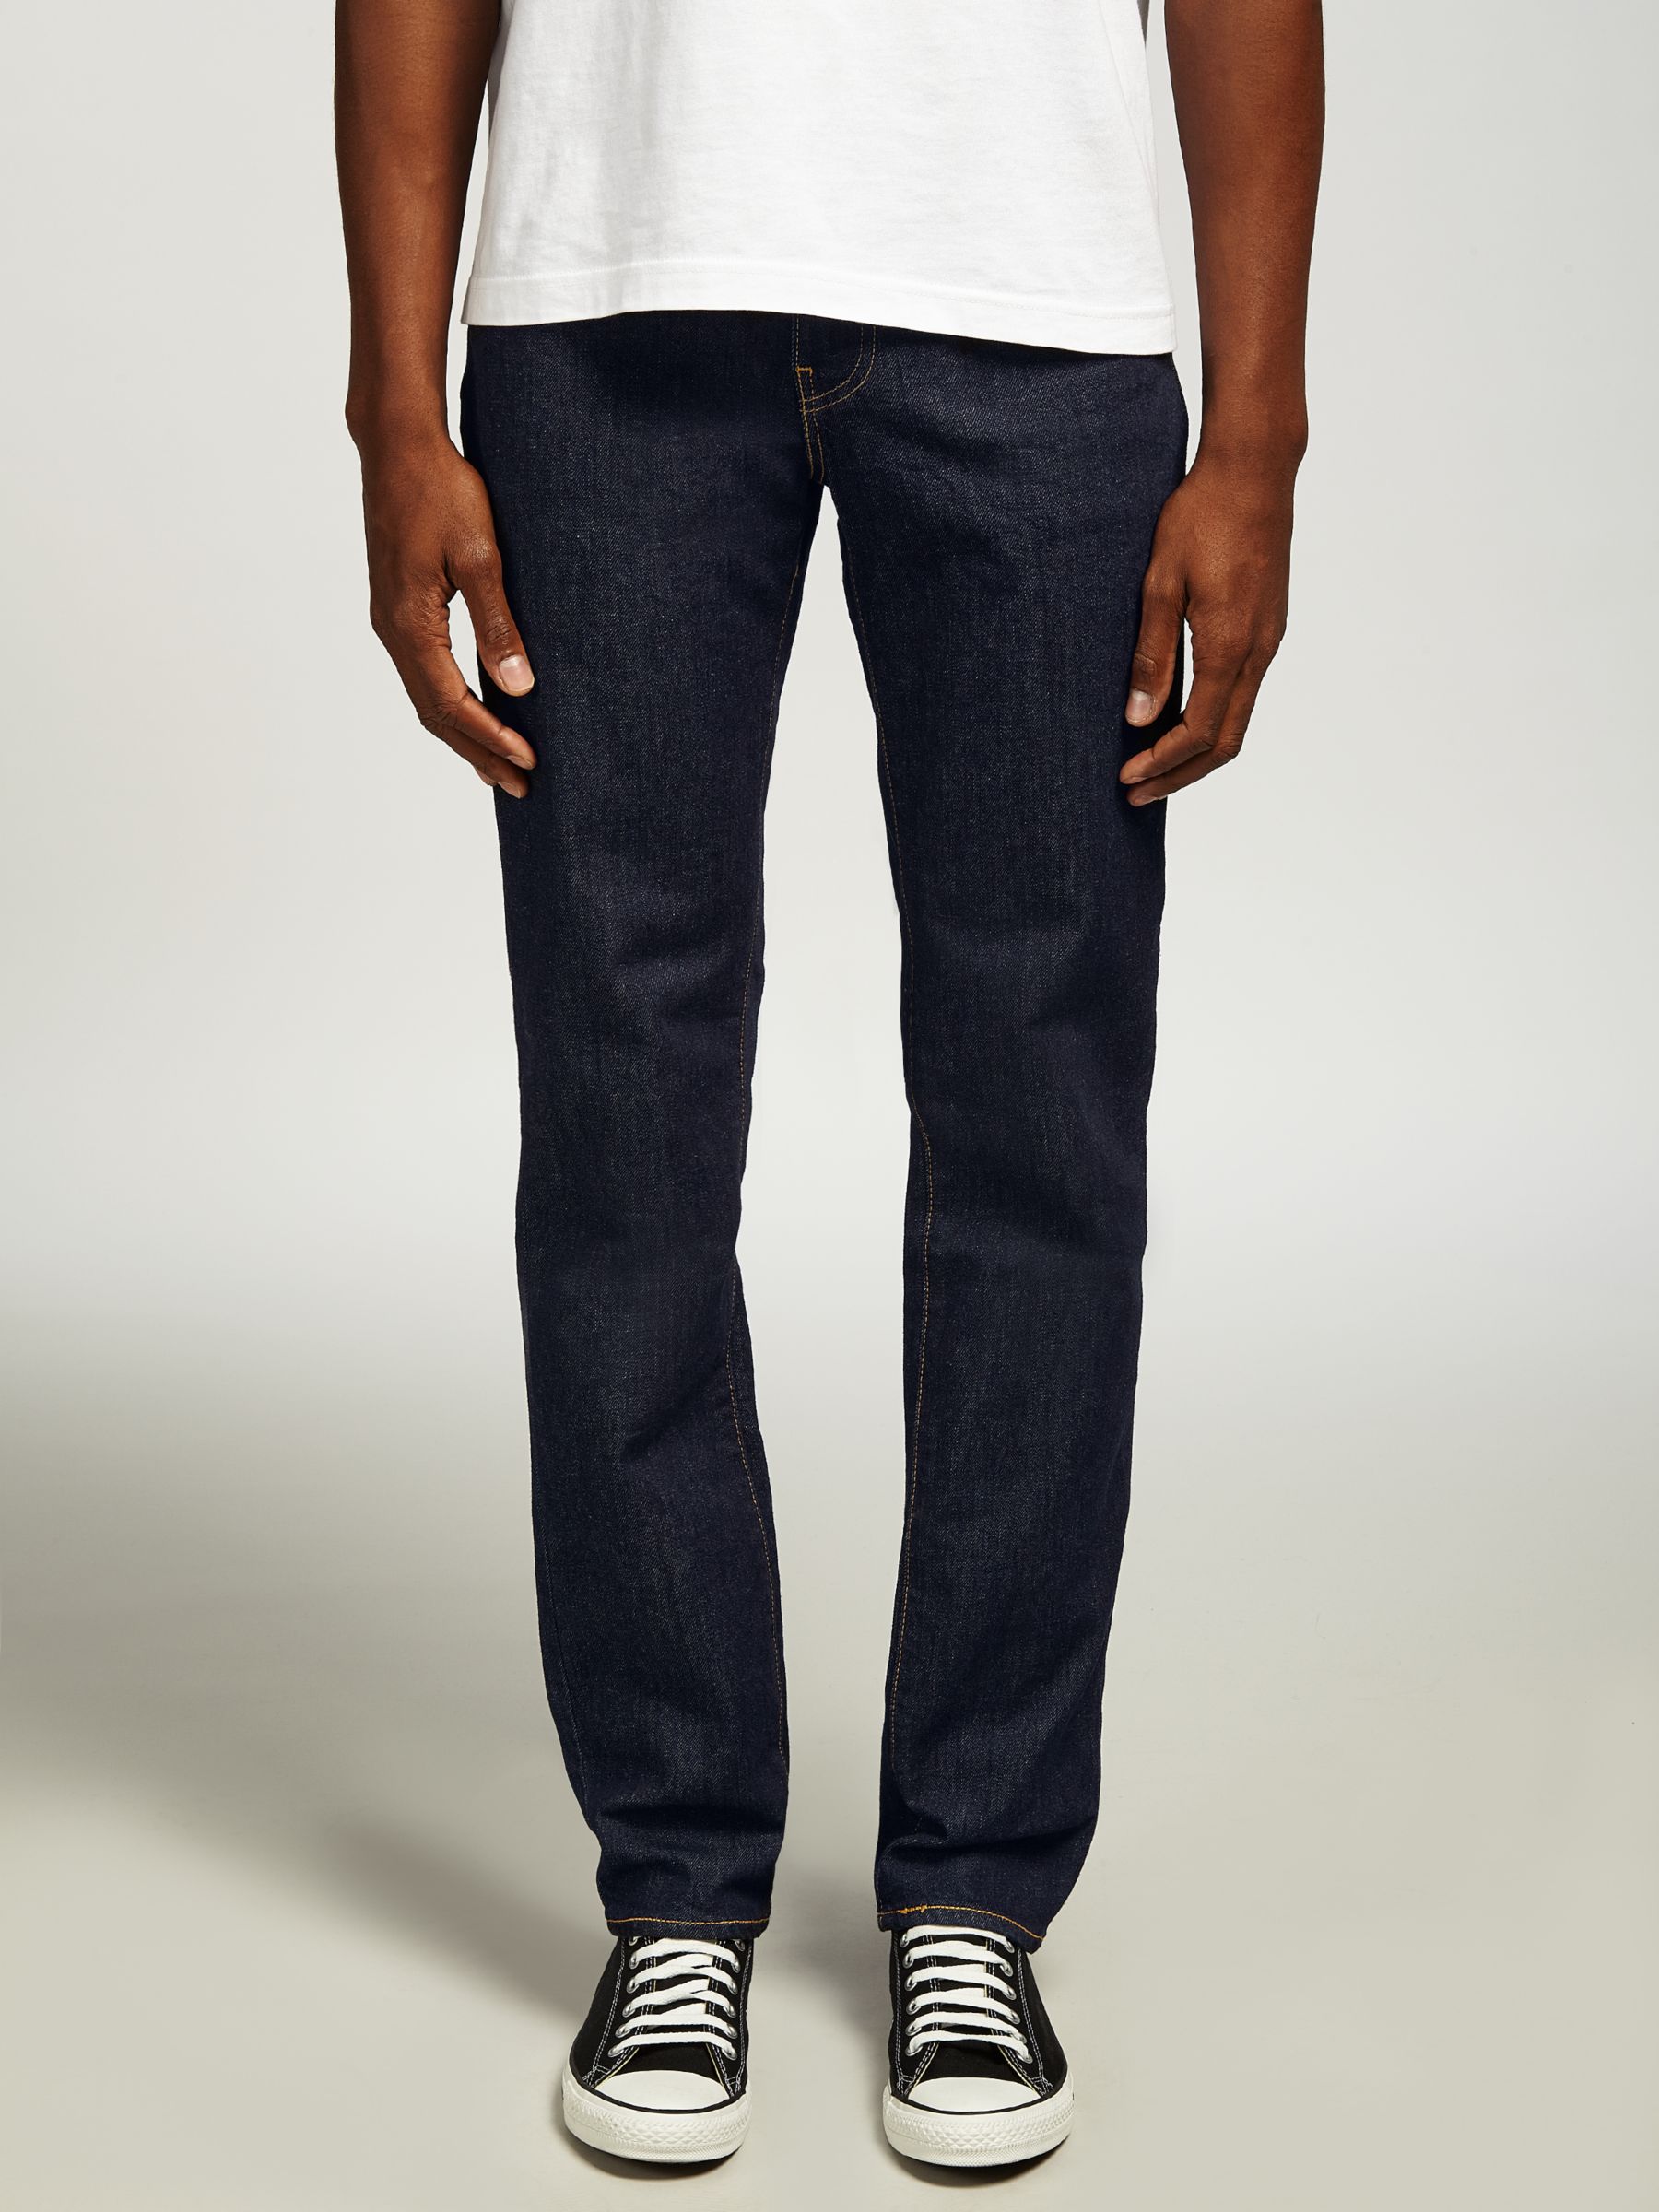 Men's Levi's Jeans | John Lewis & Partners